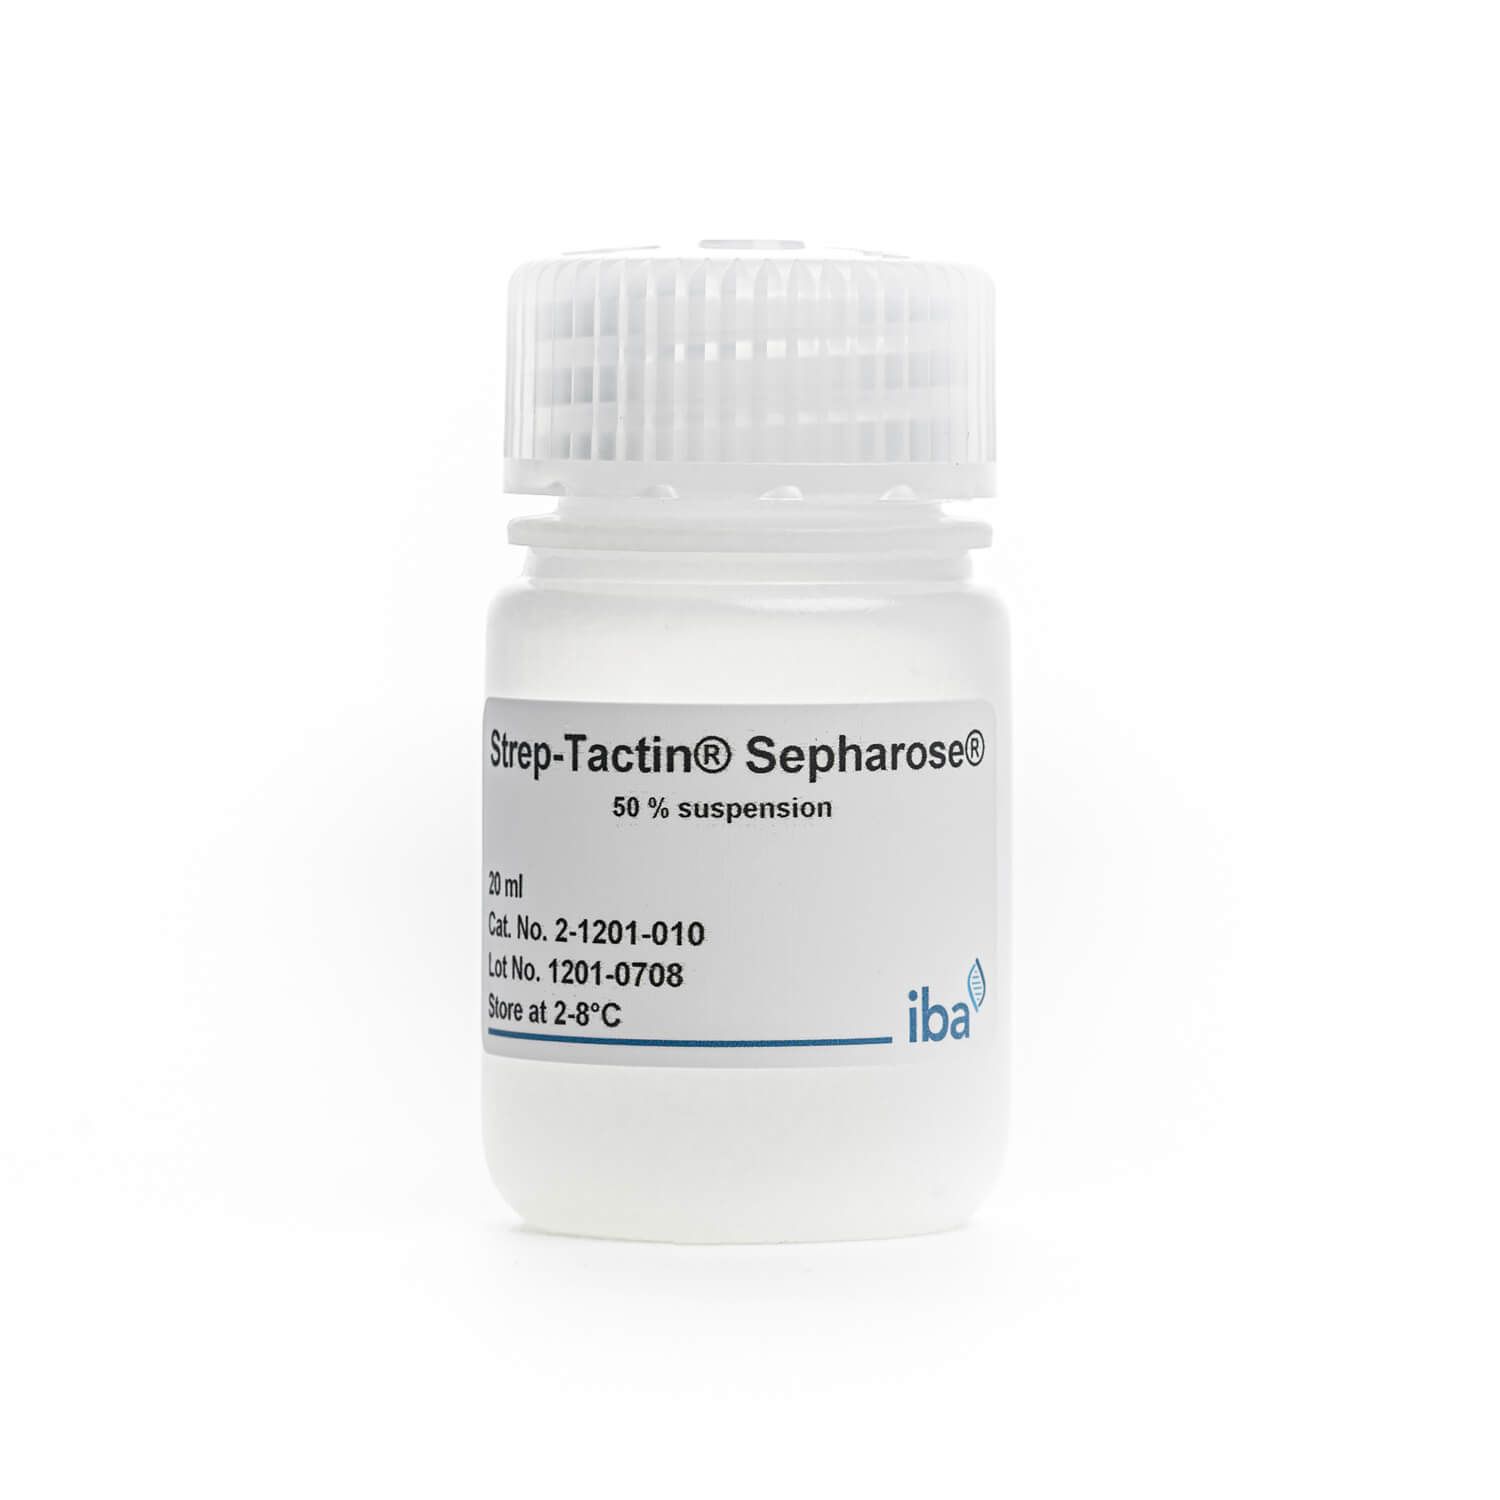 Strep-Tactin® Sepharose® resin 纯化填料